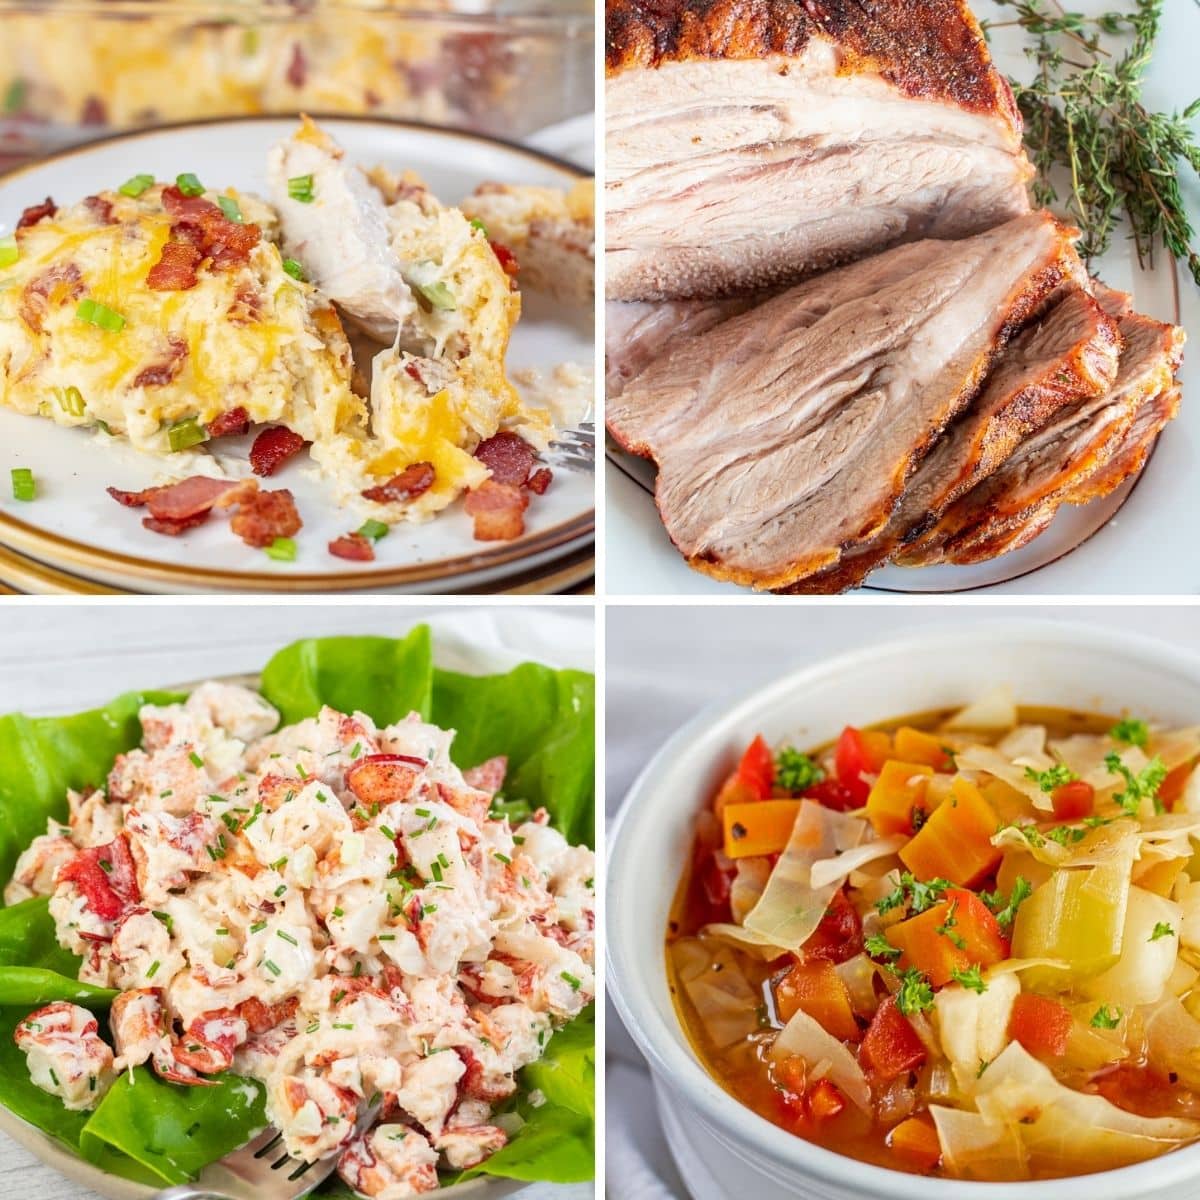 Meilleures recettes à préparer au mois de janvier, image de collage présentant 4 excellents plats pour la nouvelle année.